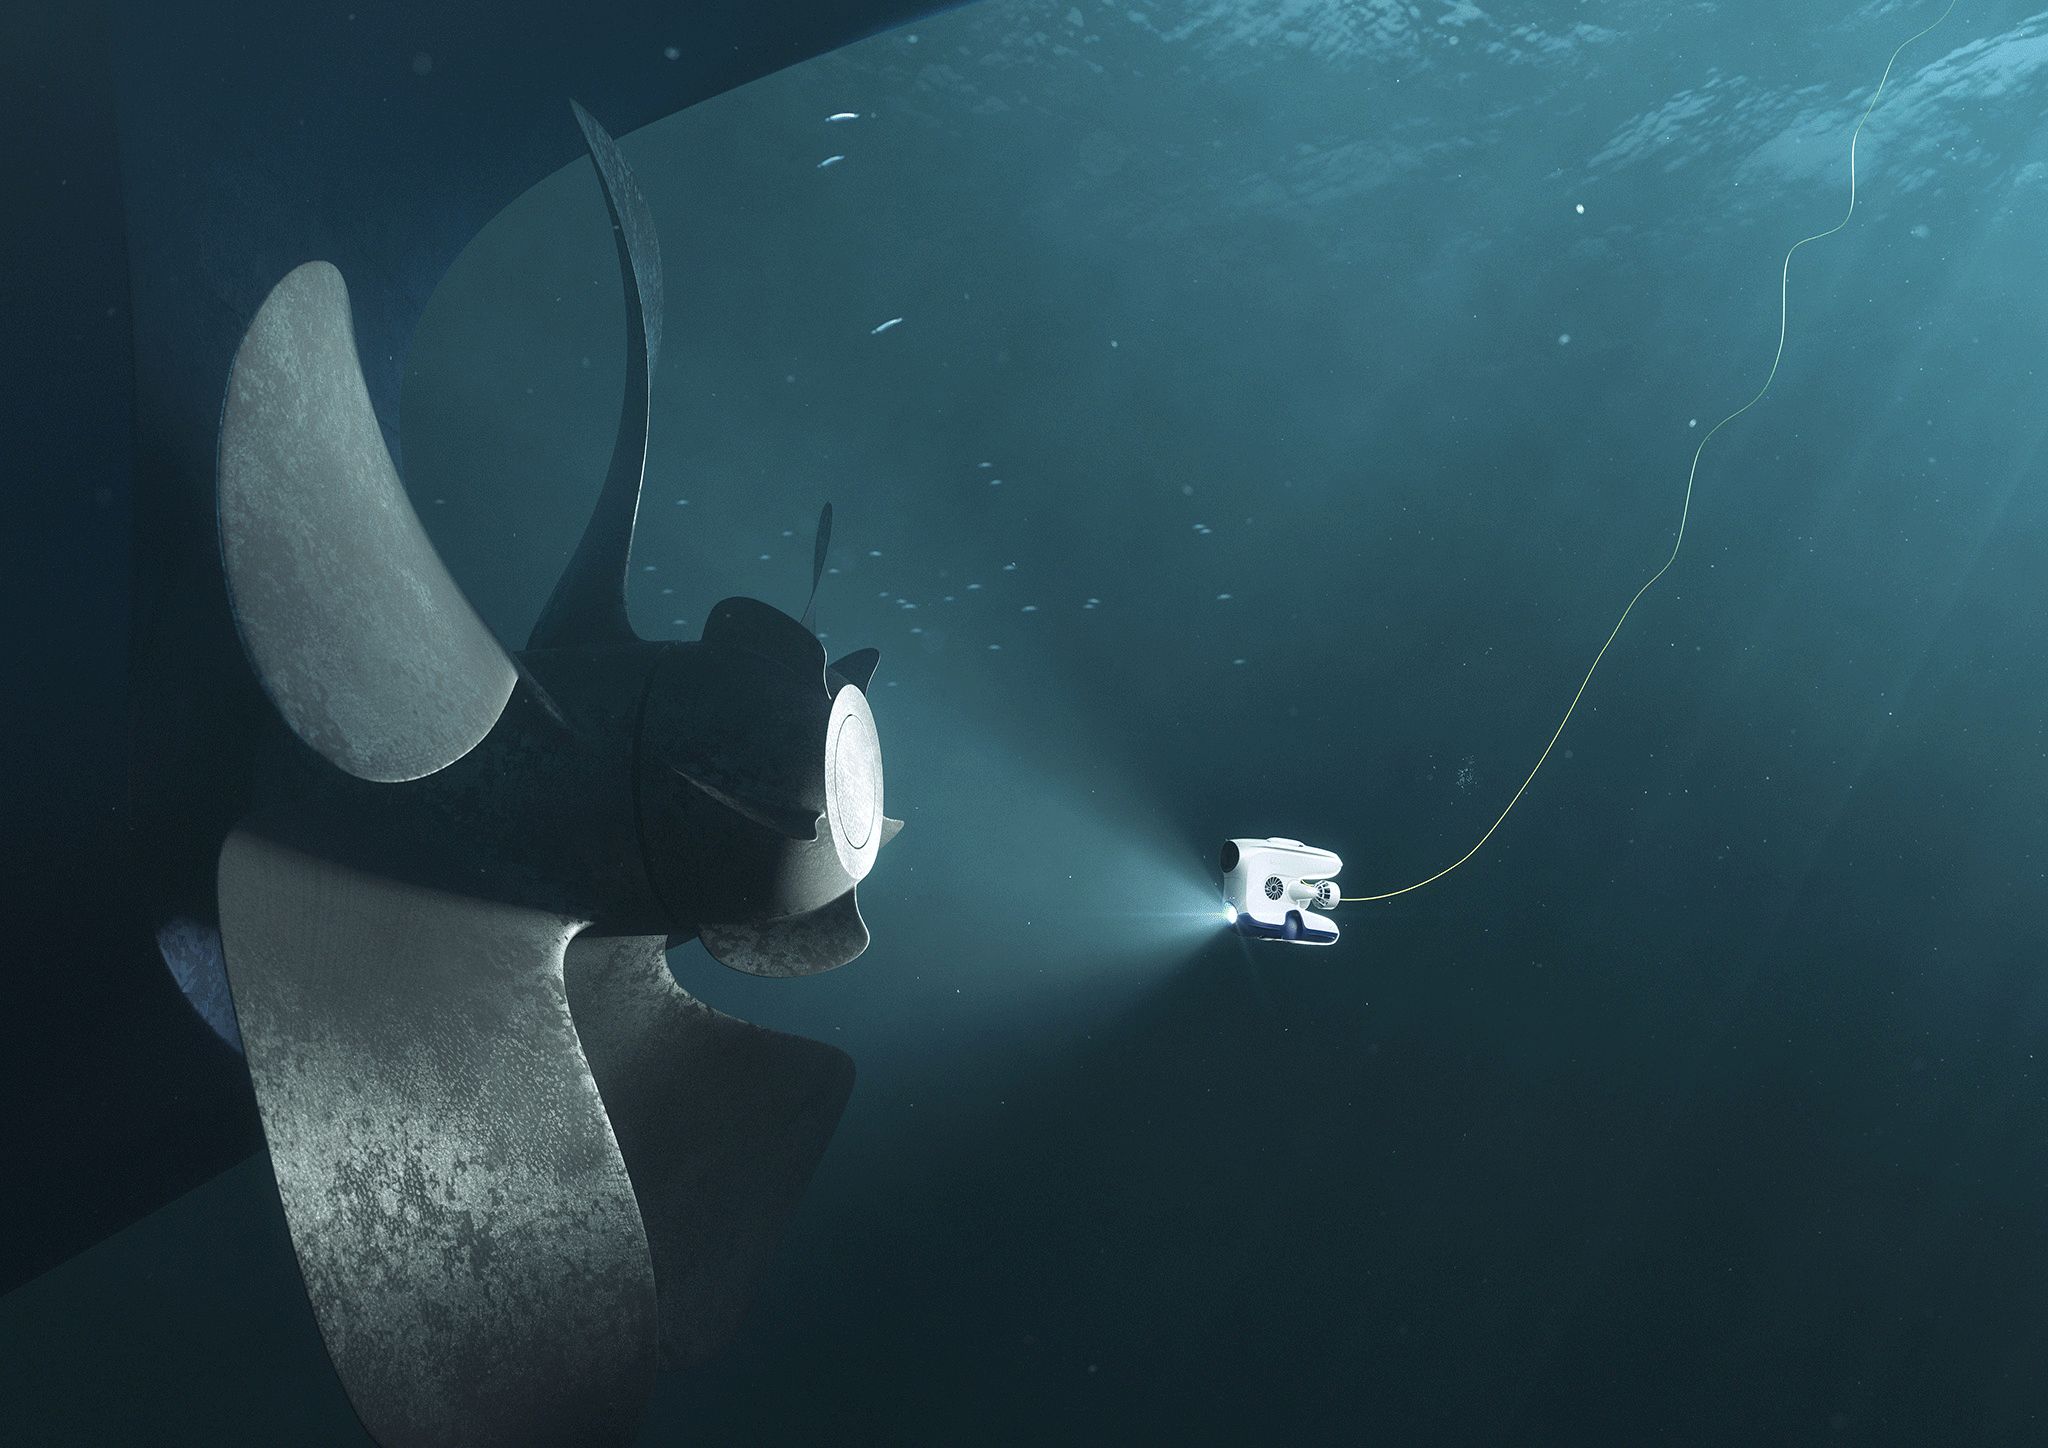 Undervannsrobot i aksjon under vann